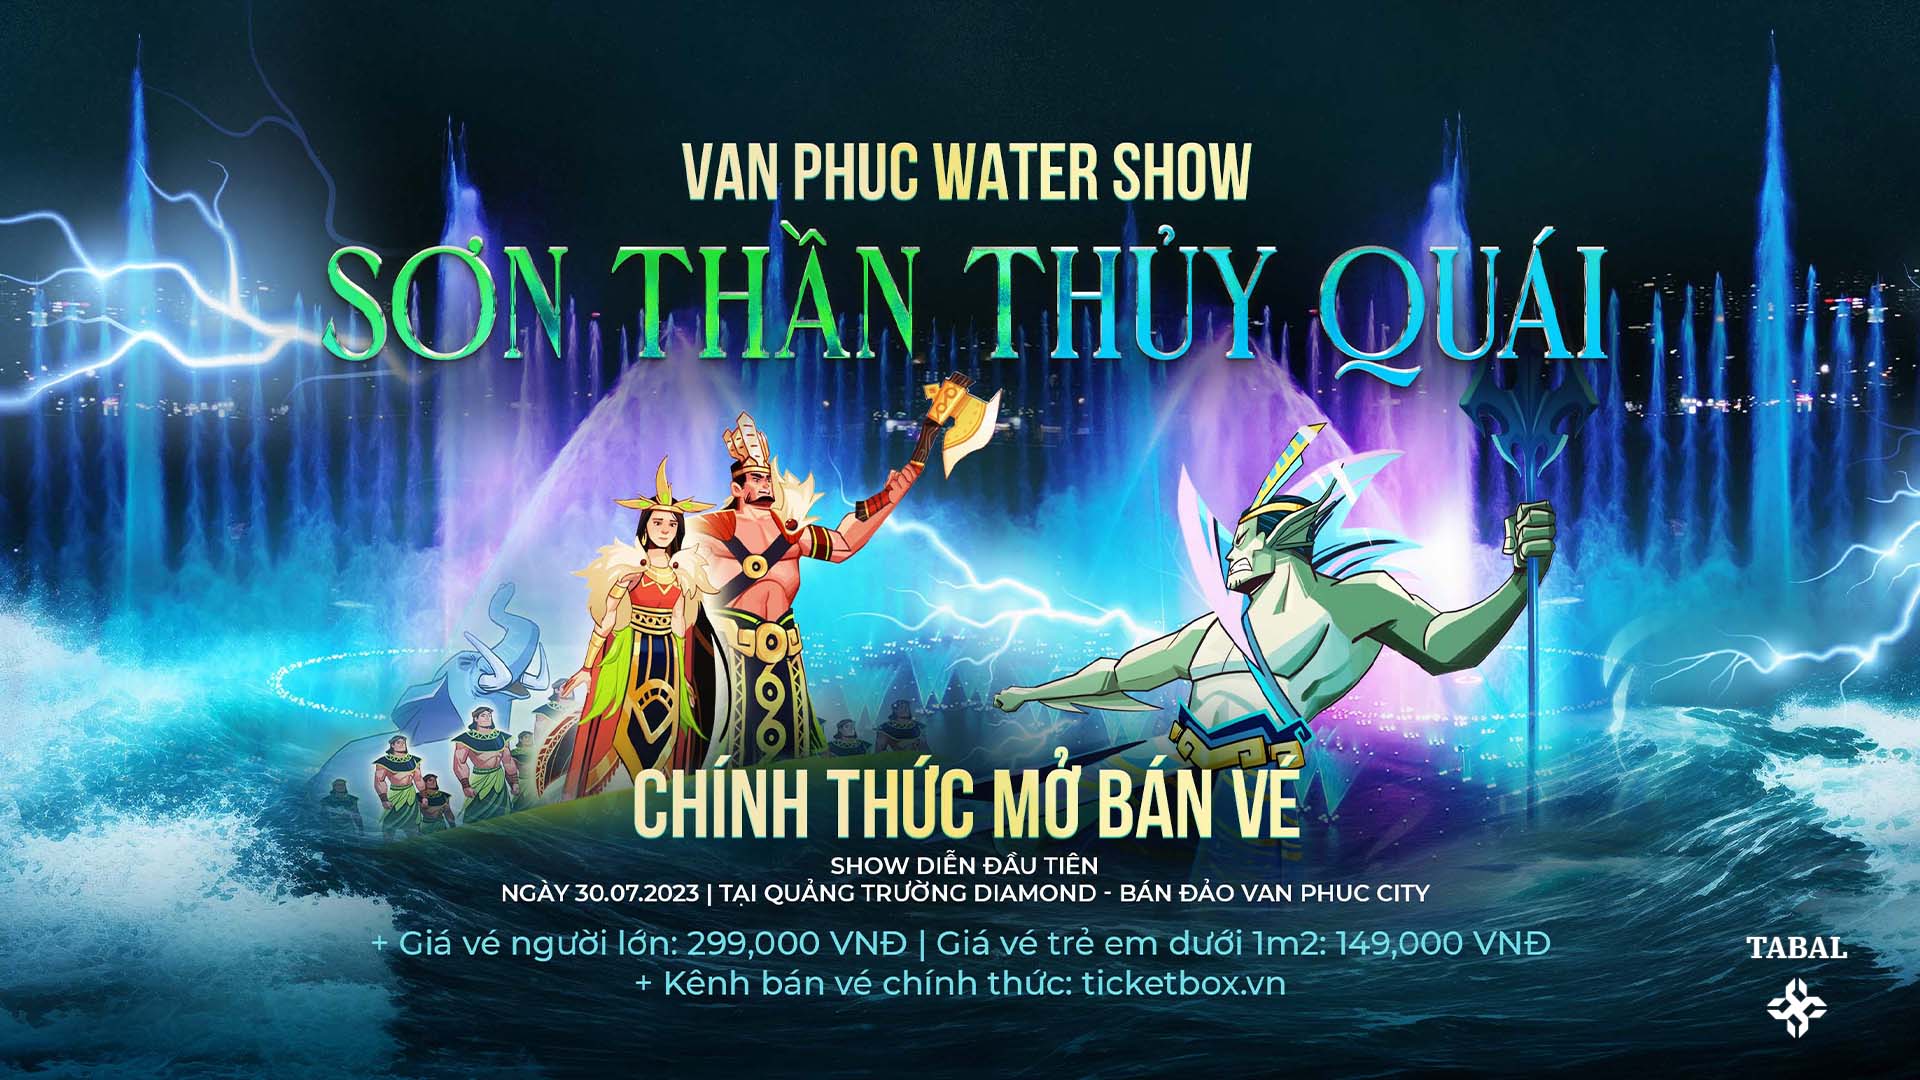 Van Phuc Group chính thức mở bán vé Chương trình Water Show với cốt truyện “SƠN THẦN THỦY QUÁI” - Đón xem show diễn đầu tiên của "Van Phuc Water Show” vào lúc 19h ngày 30/07/2023.